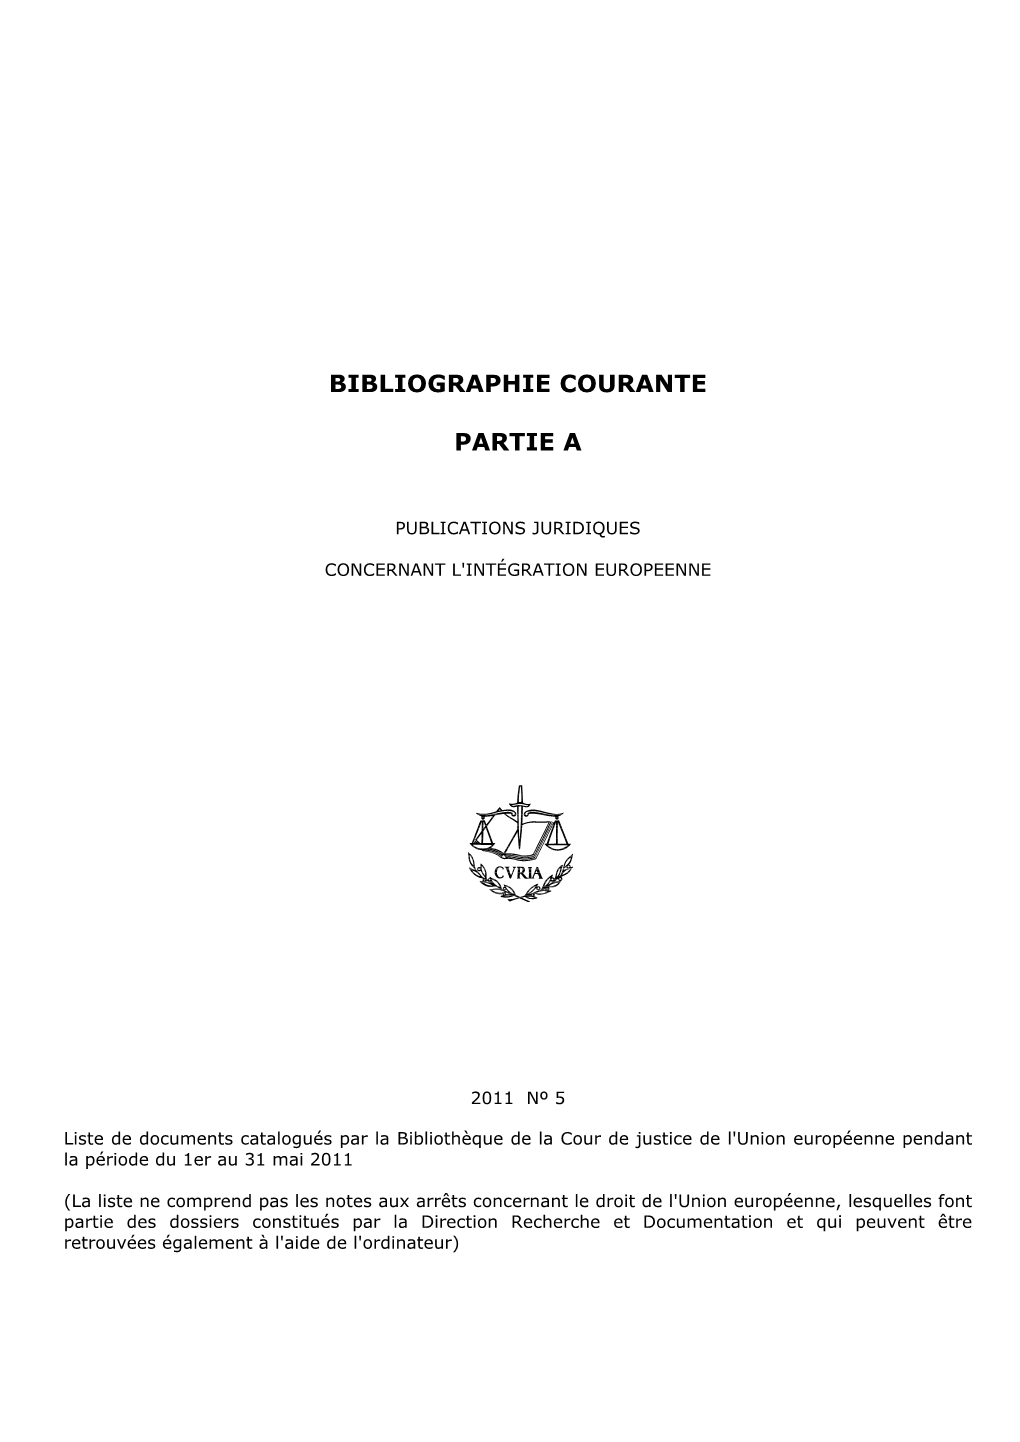 CJUE - Système Symphony Bibliothèque - Bibliographie Courante Edition Du 07/09/2011 - Droit De L'union Européenne - Mat